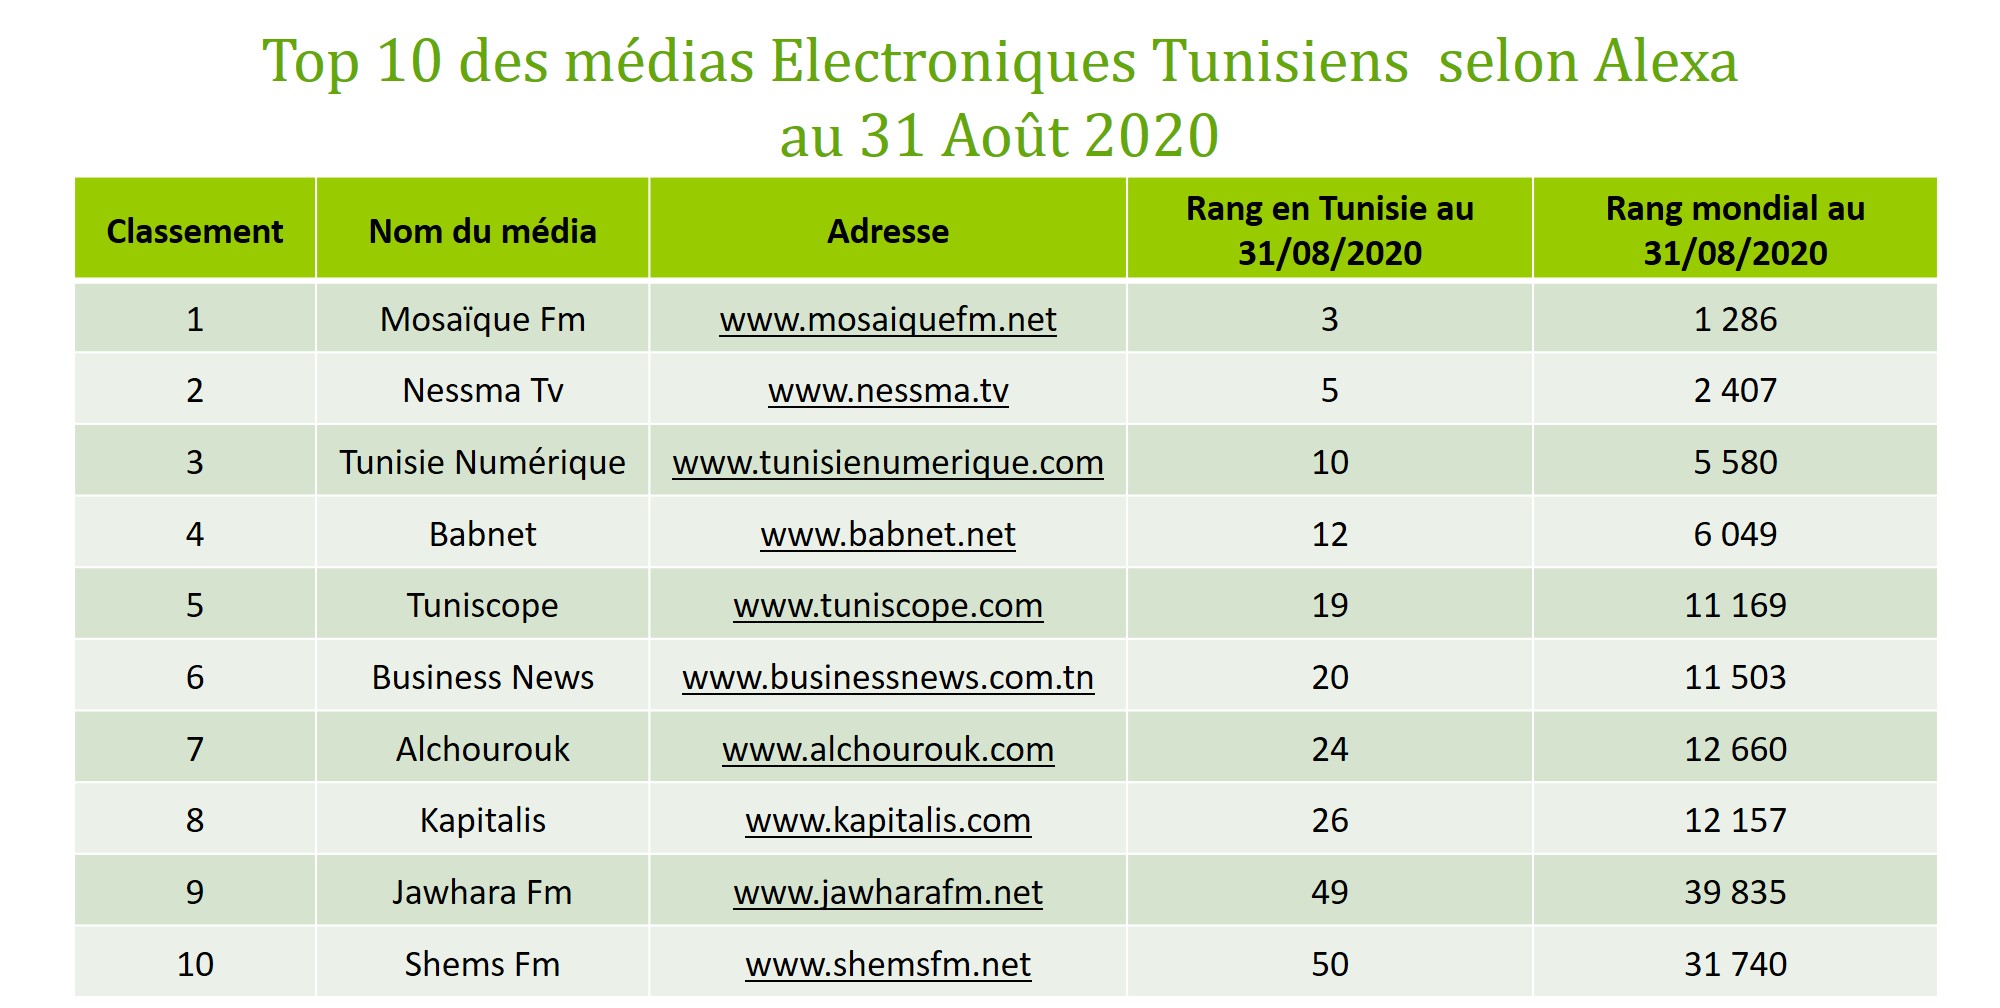 Top 10 des médias électroniques Tunisiens au 31 Août 2020